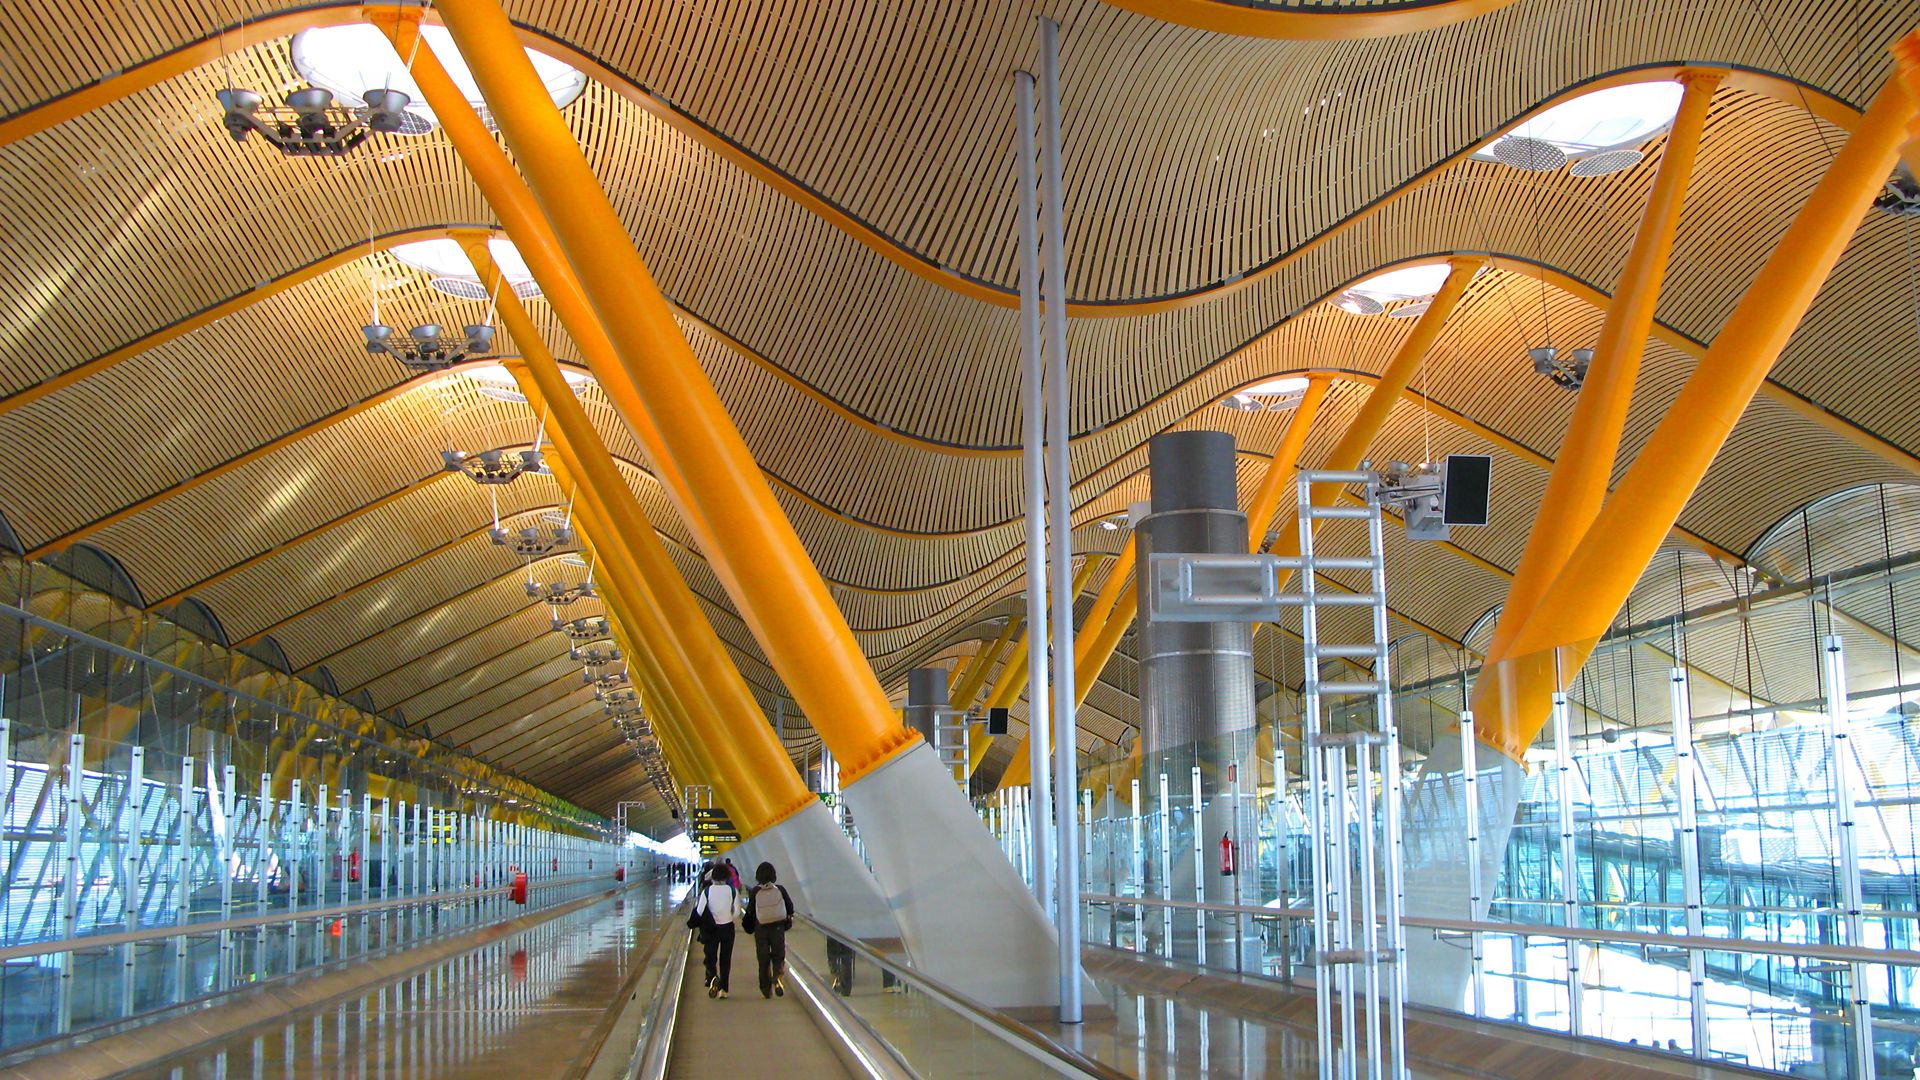 Barajas Airport in Madrid, Spain